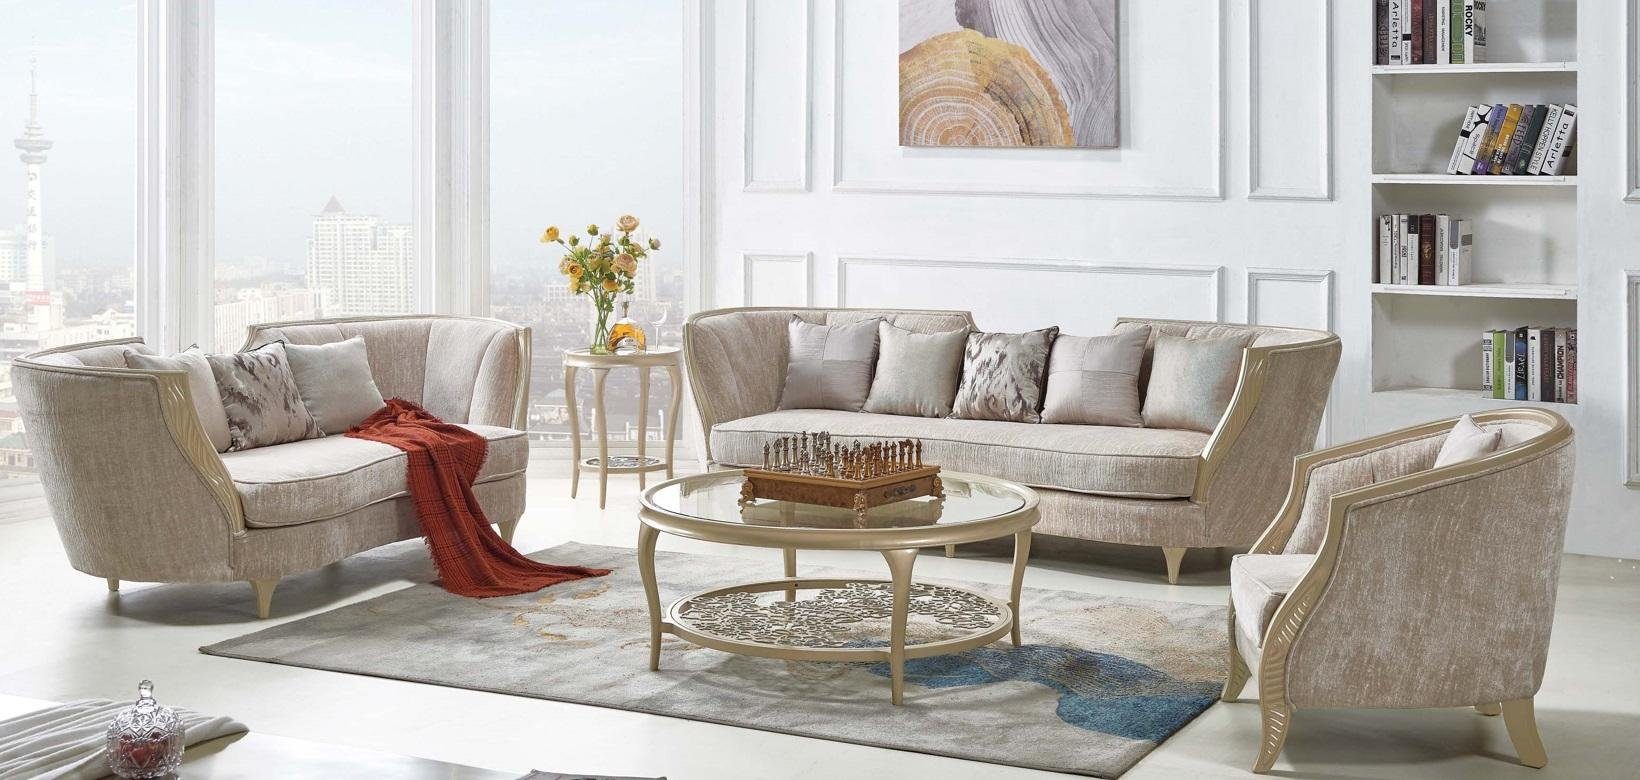 JVmoebel Sofa in Made Sofa Möbel Europe Taupe Gold Klassisch, Sofagarnitur Hotel Stoff Einrichtung